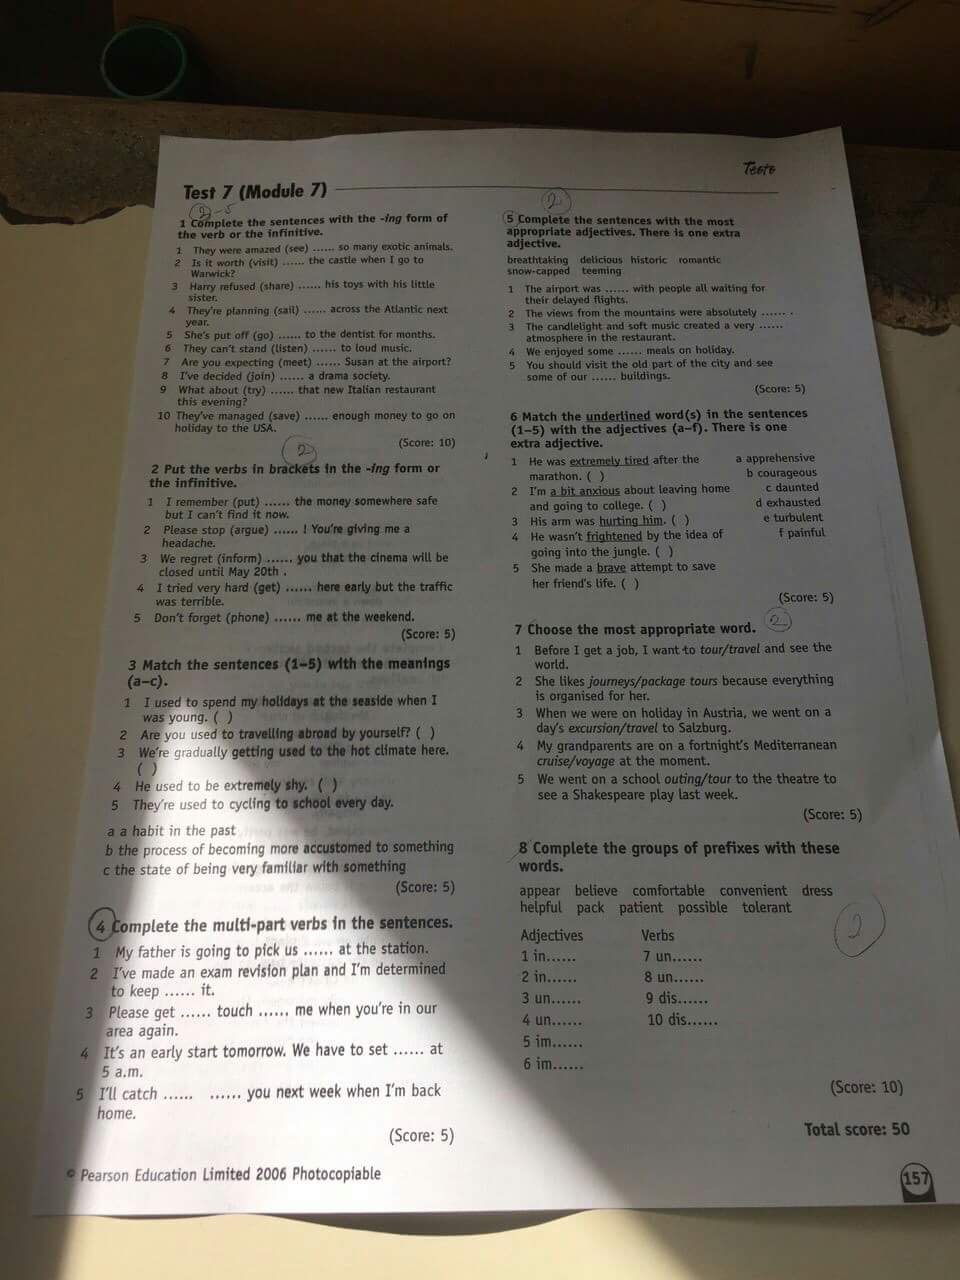 Form 10 test 1